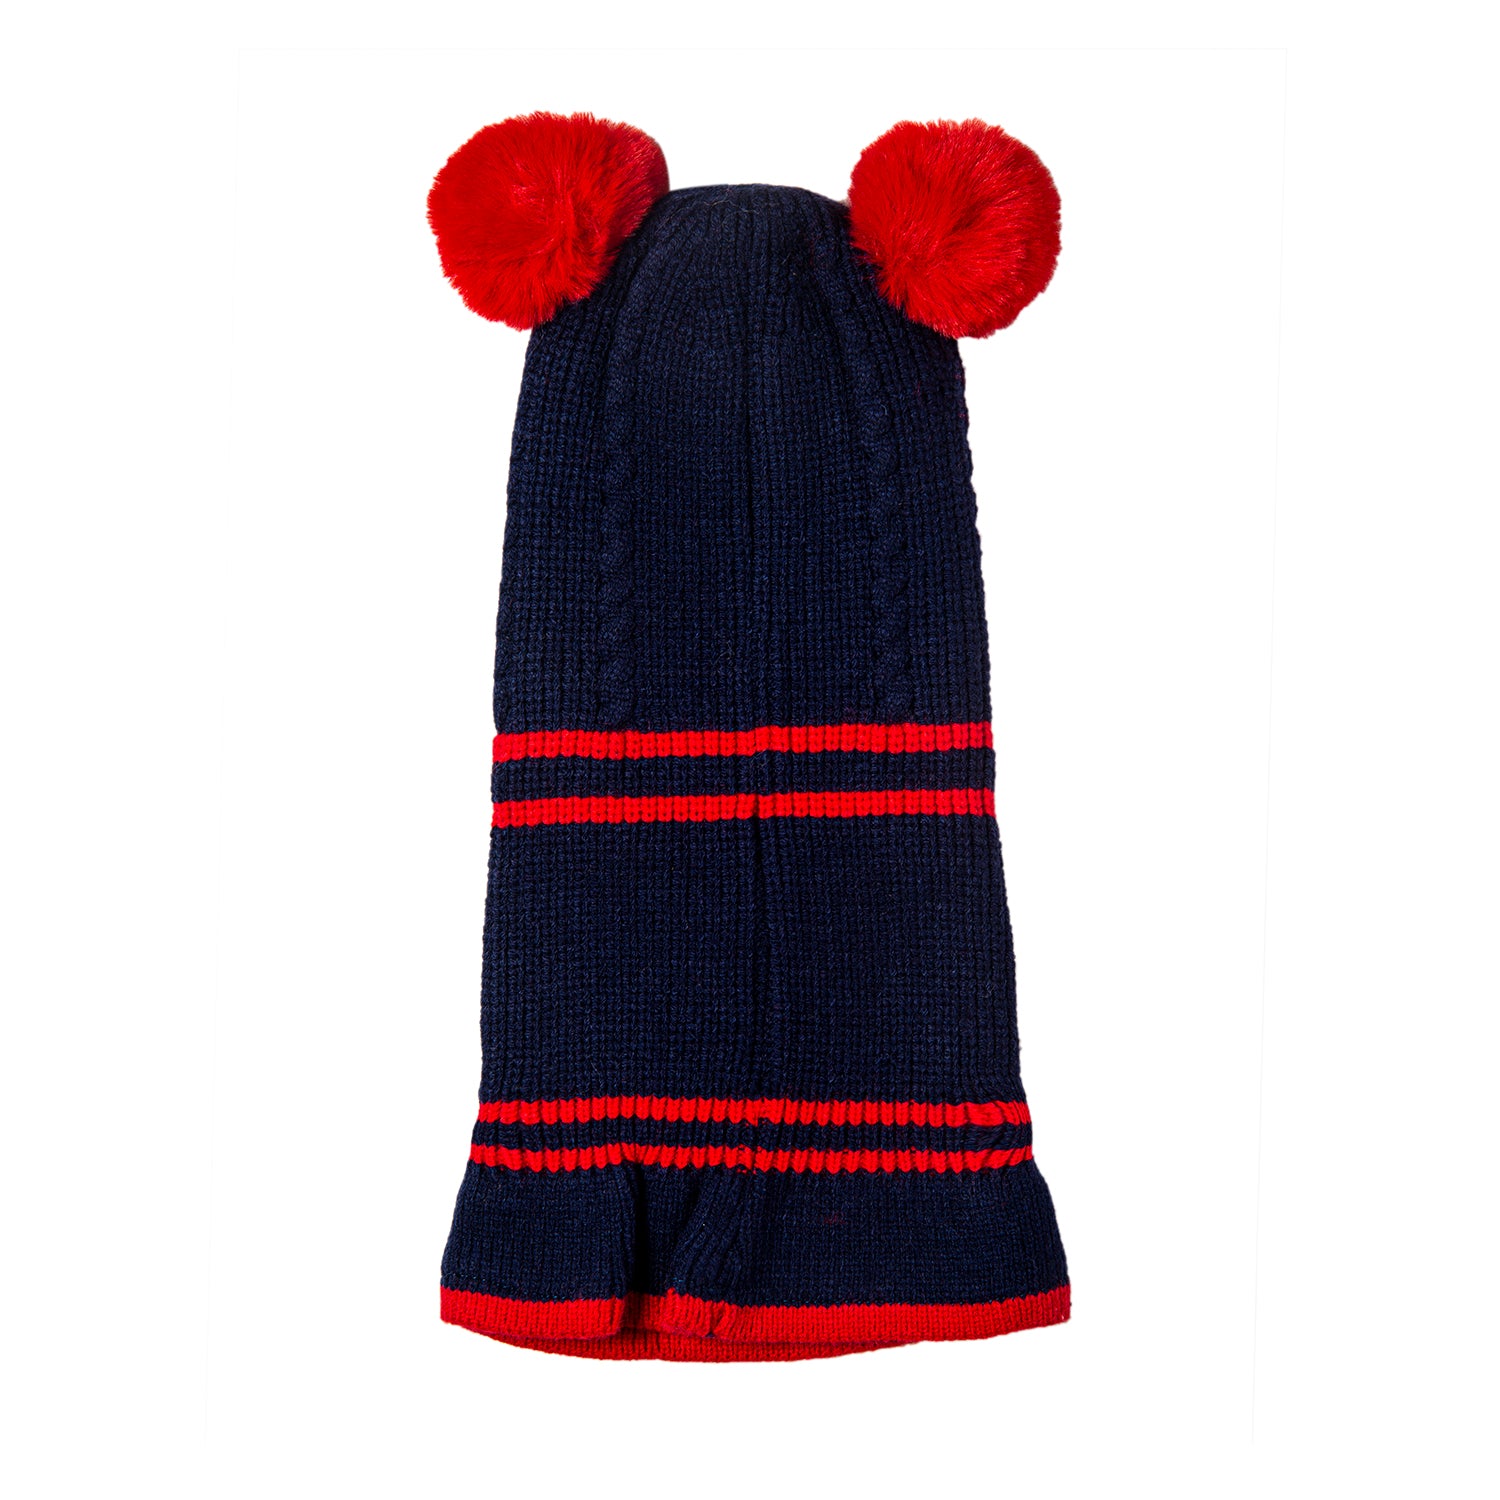 Baby Moo Winter Monkey Cap Woollen Hat Pom Pom Navy Blue